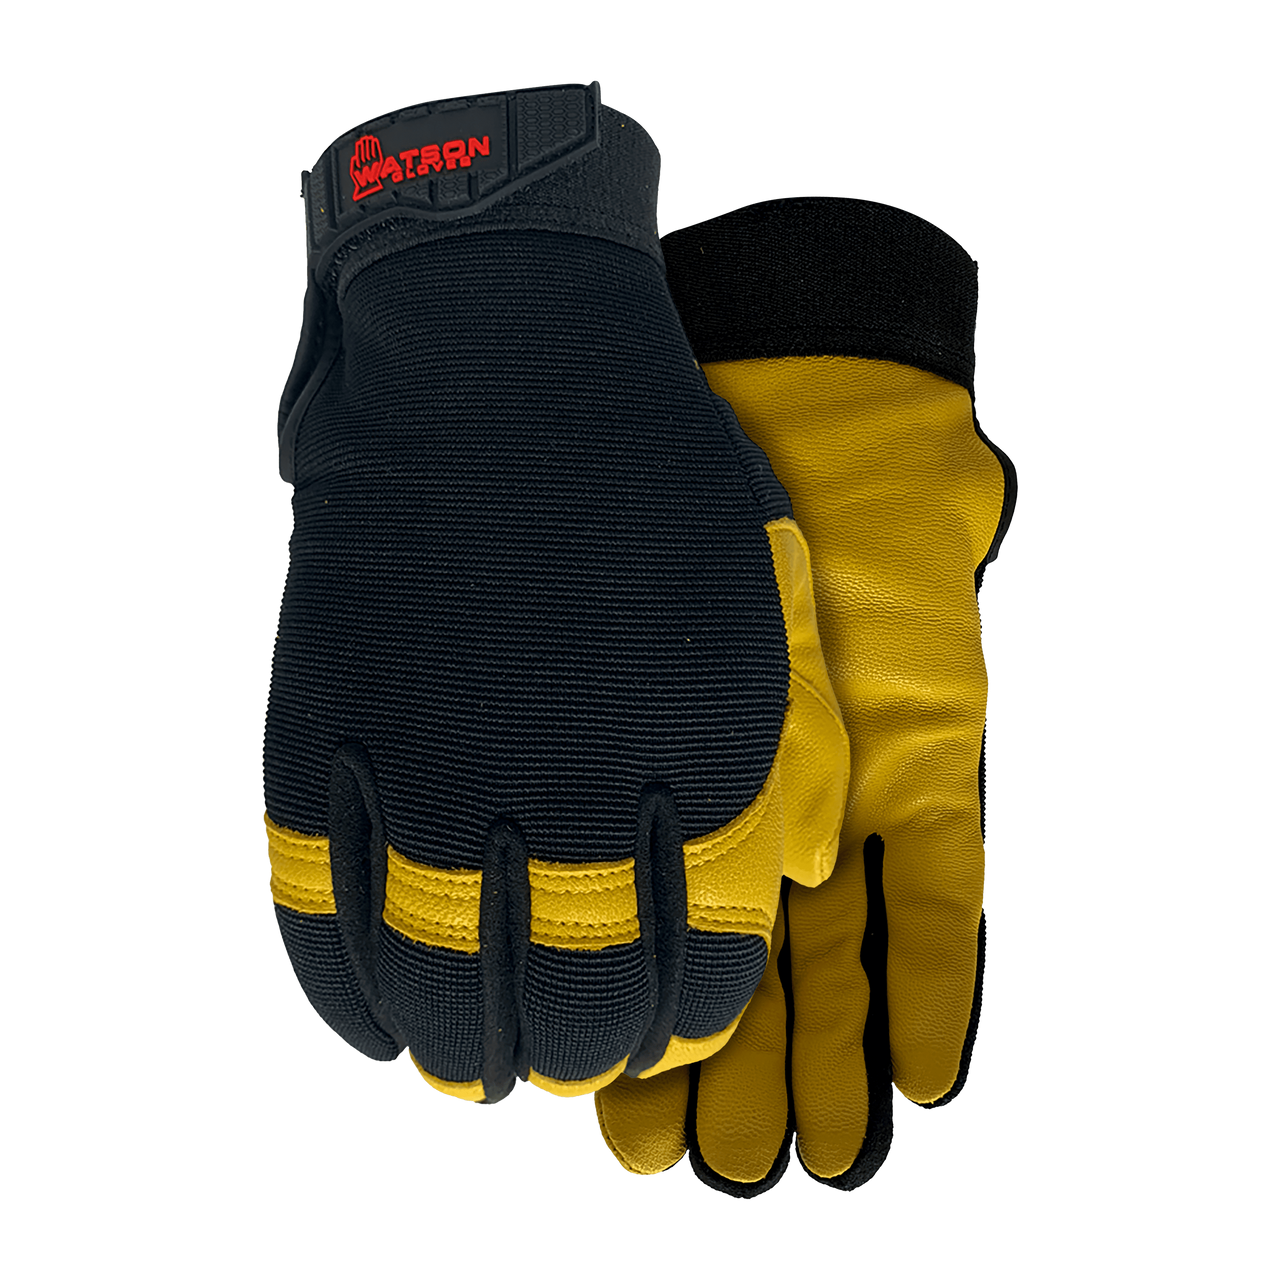 Watson 012 Iron Lady Gloves